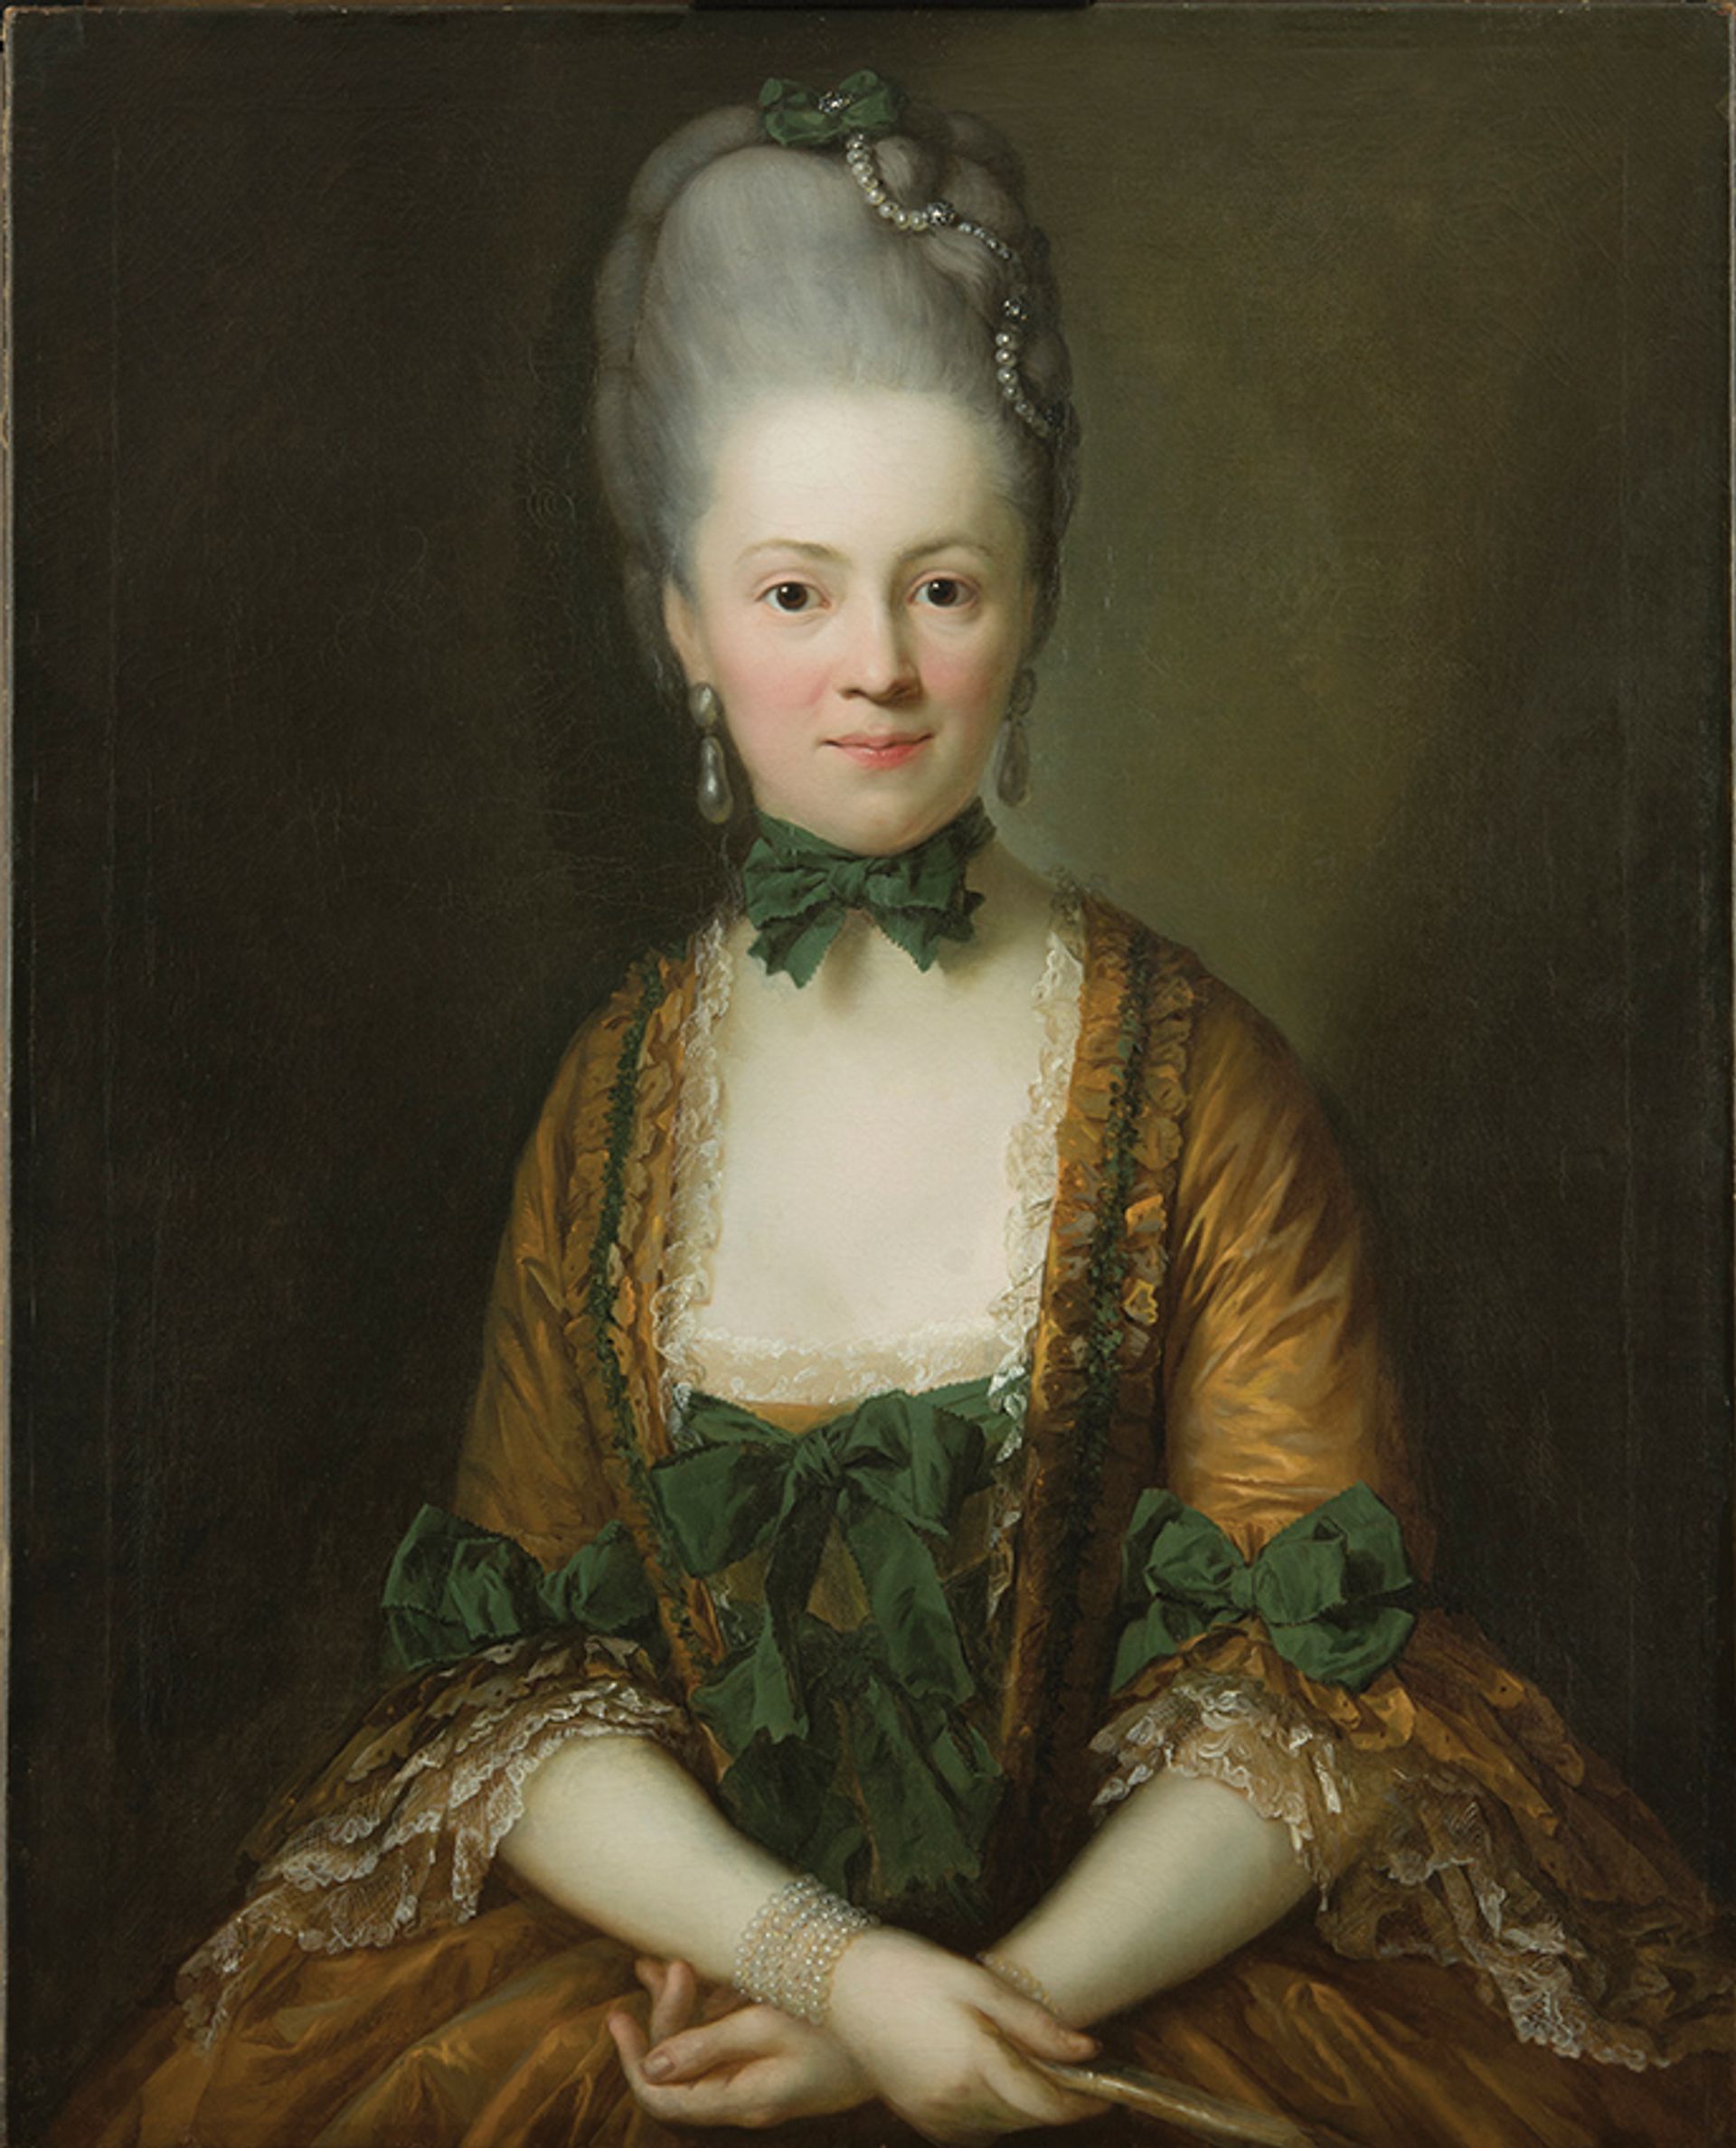 Anton Graff’s 1772 portrait of Henriette Caroline von Carlowitz after conservation Photo: Kerstin Krainer; © Staatliche Museen zu Berlin; Nationalgalerie